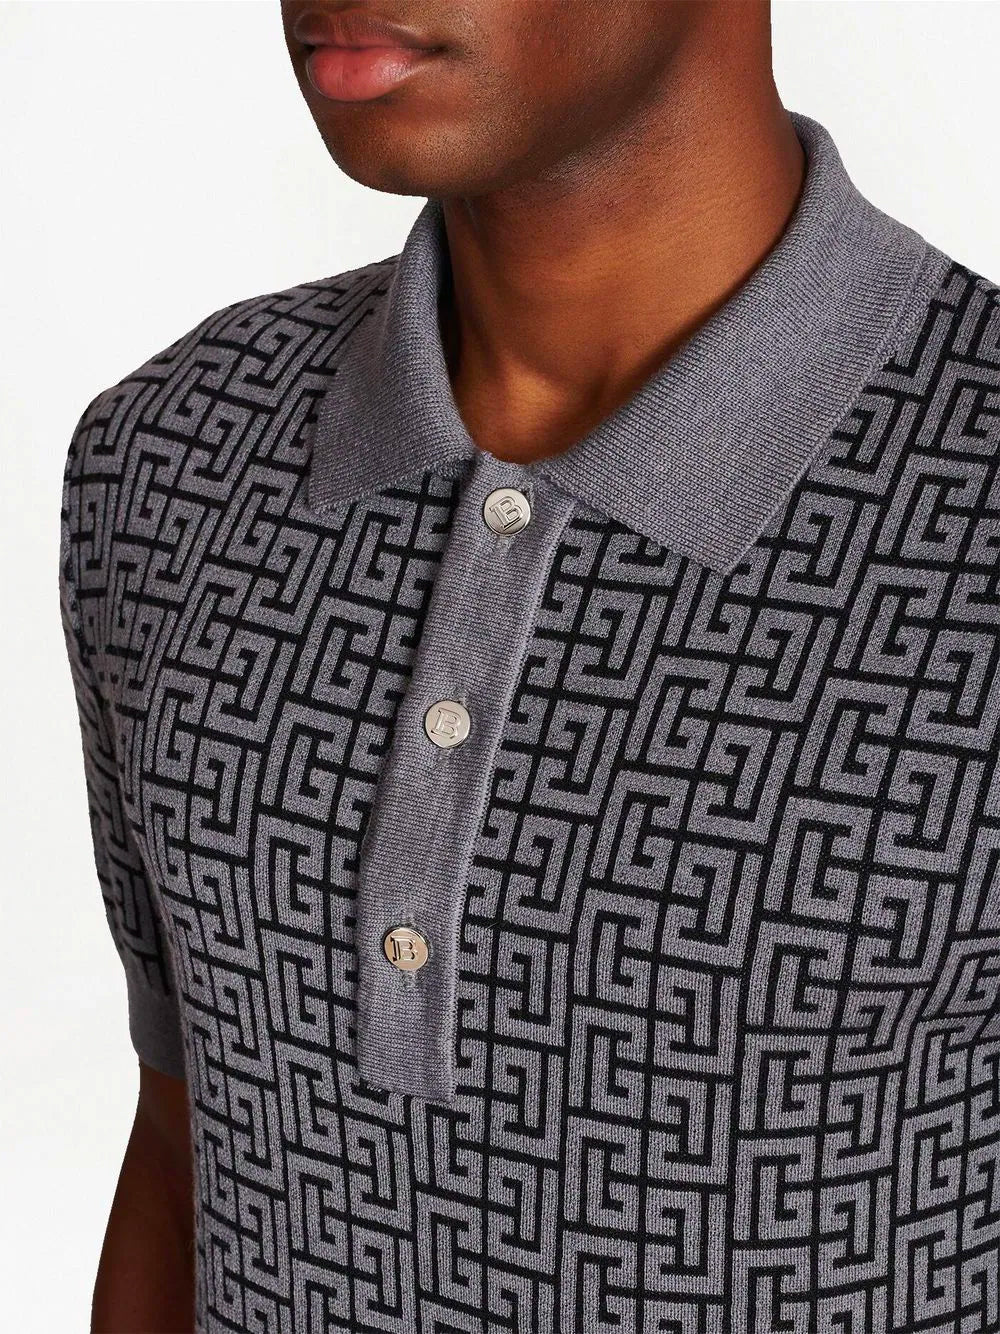 BALMAIN PB-Monogram Polo Shirt Black/Dark Grey - MAISONDEFASHION.COM